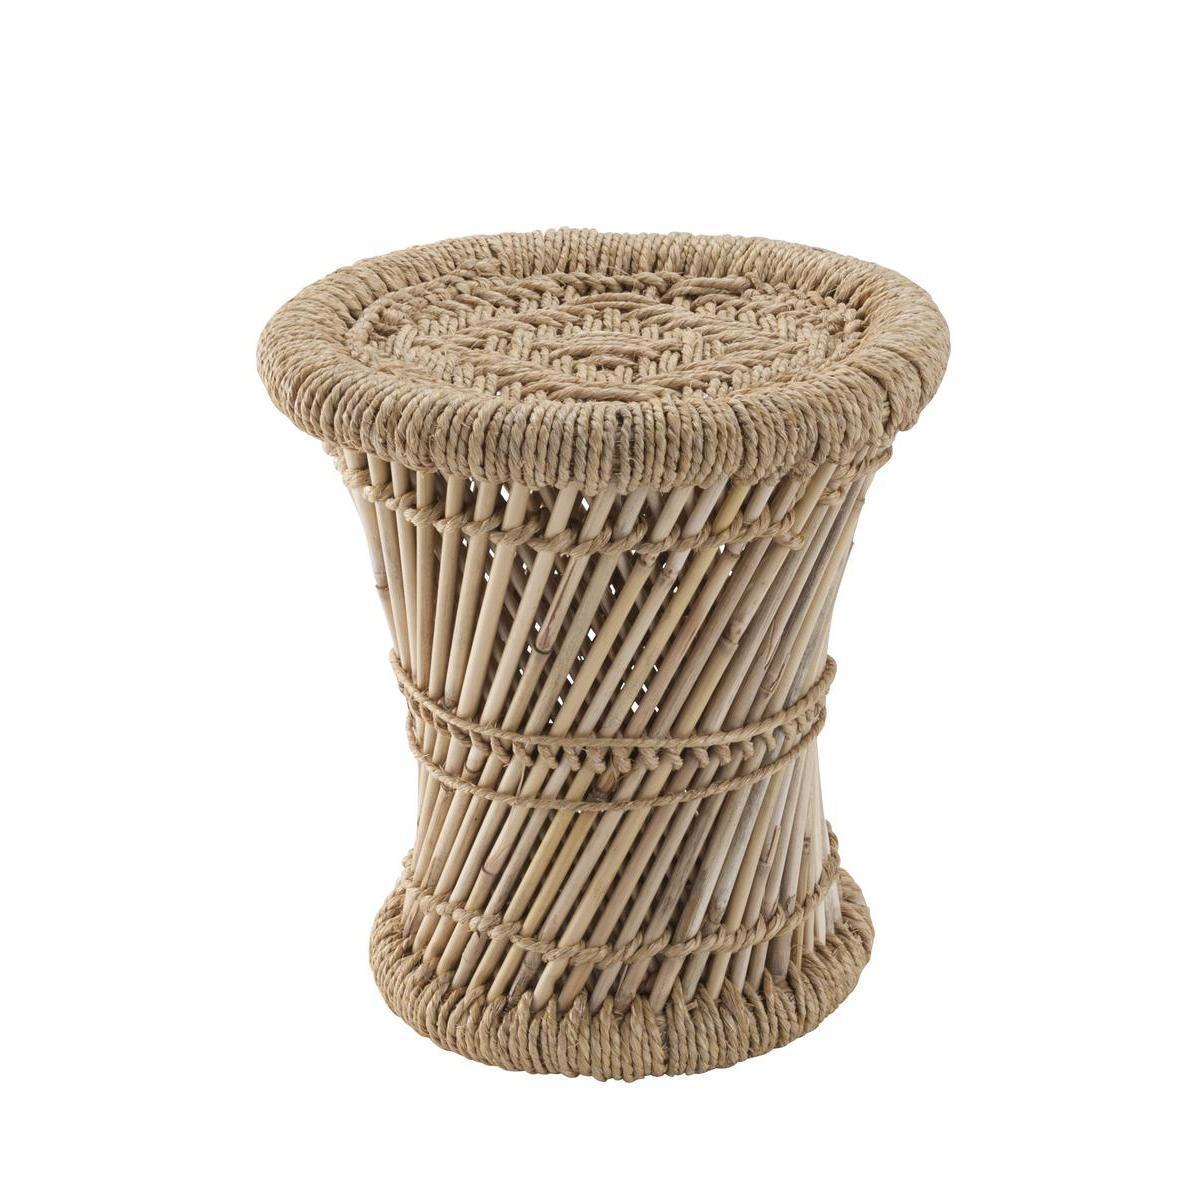 Bout de canapé en bambou - Petit format - ø 30 x H 30 cm - Beige